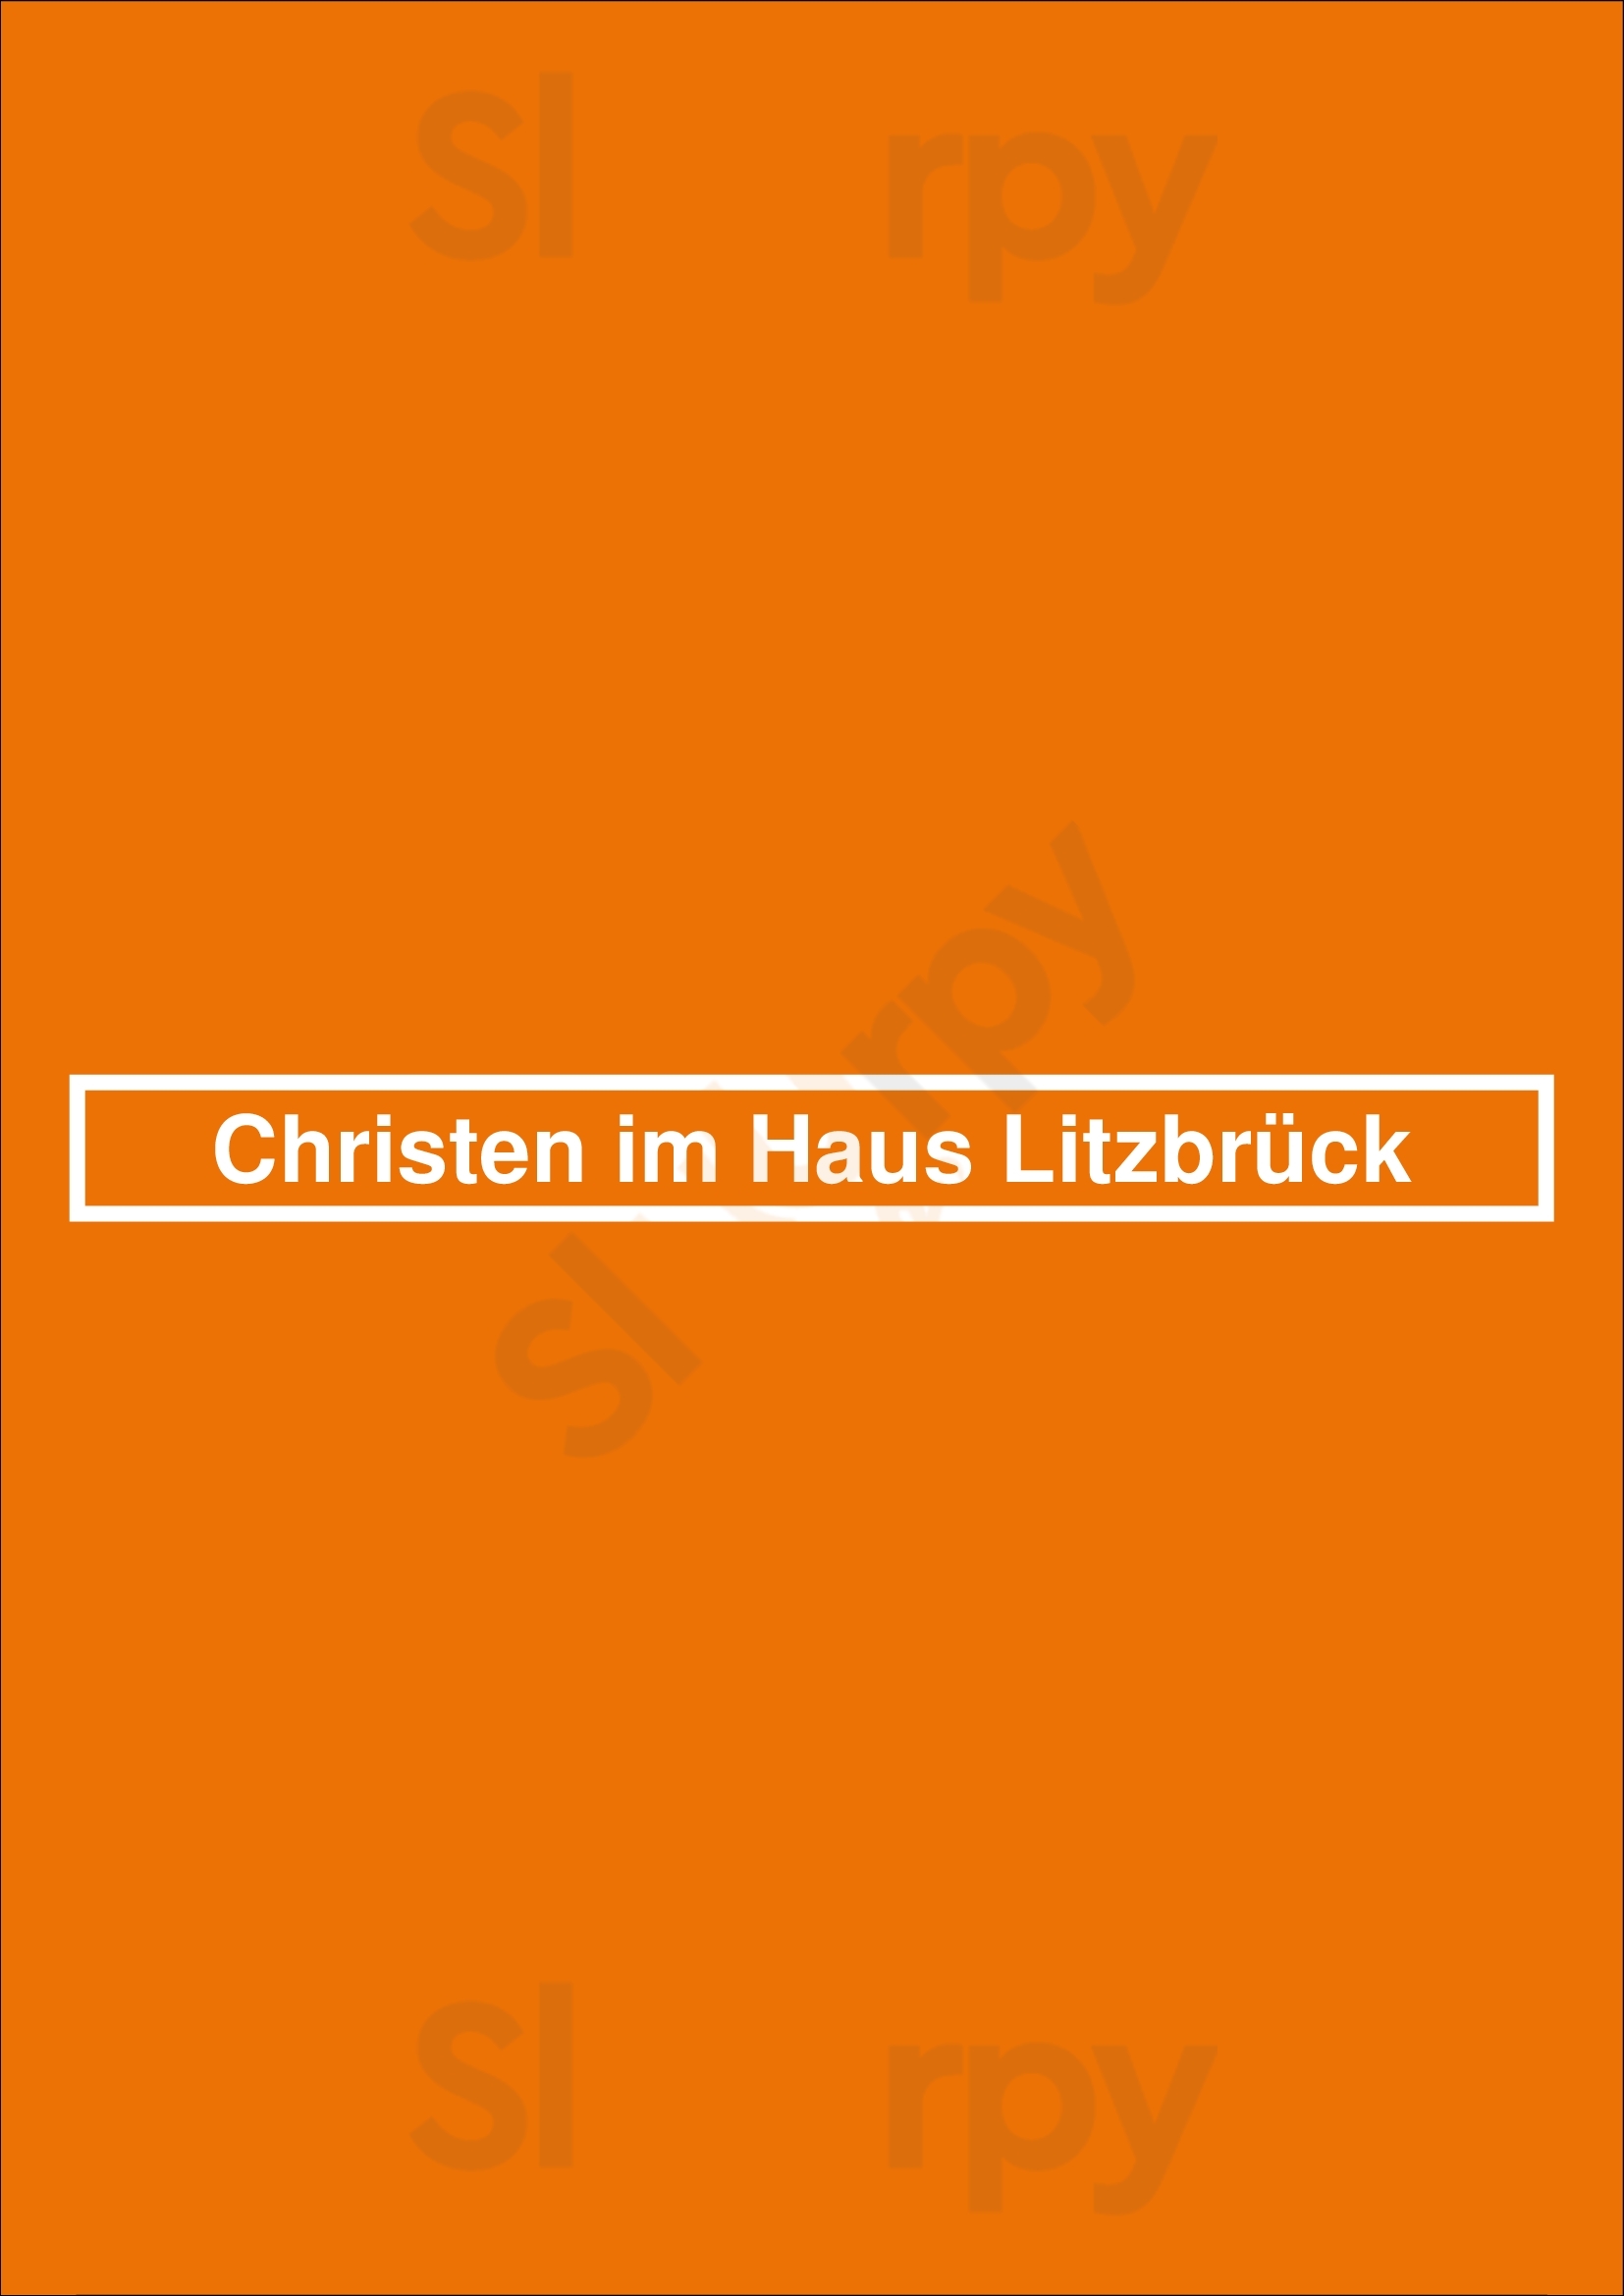 Christen Im Haus Litzbrück Düsseldorf Menu - 1